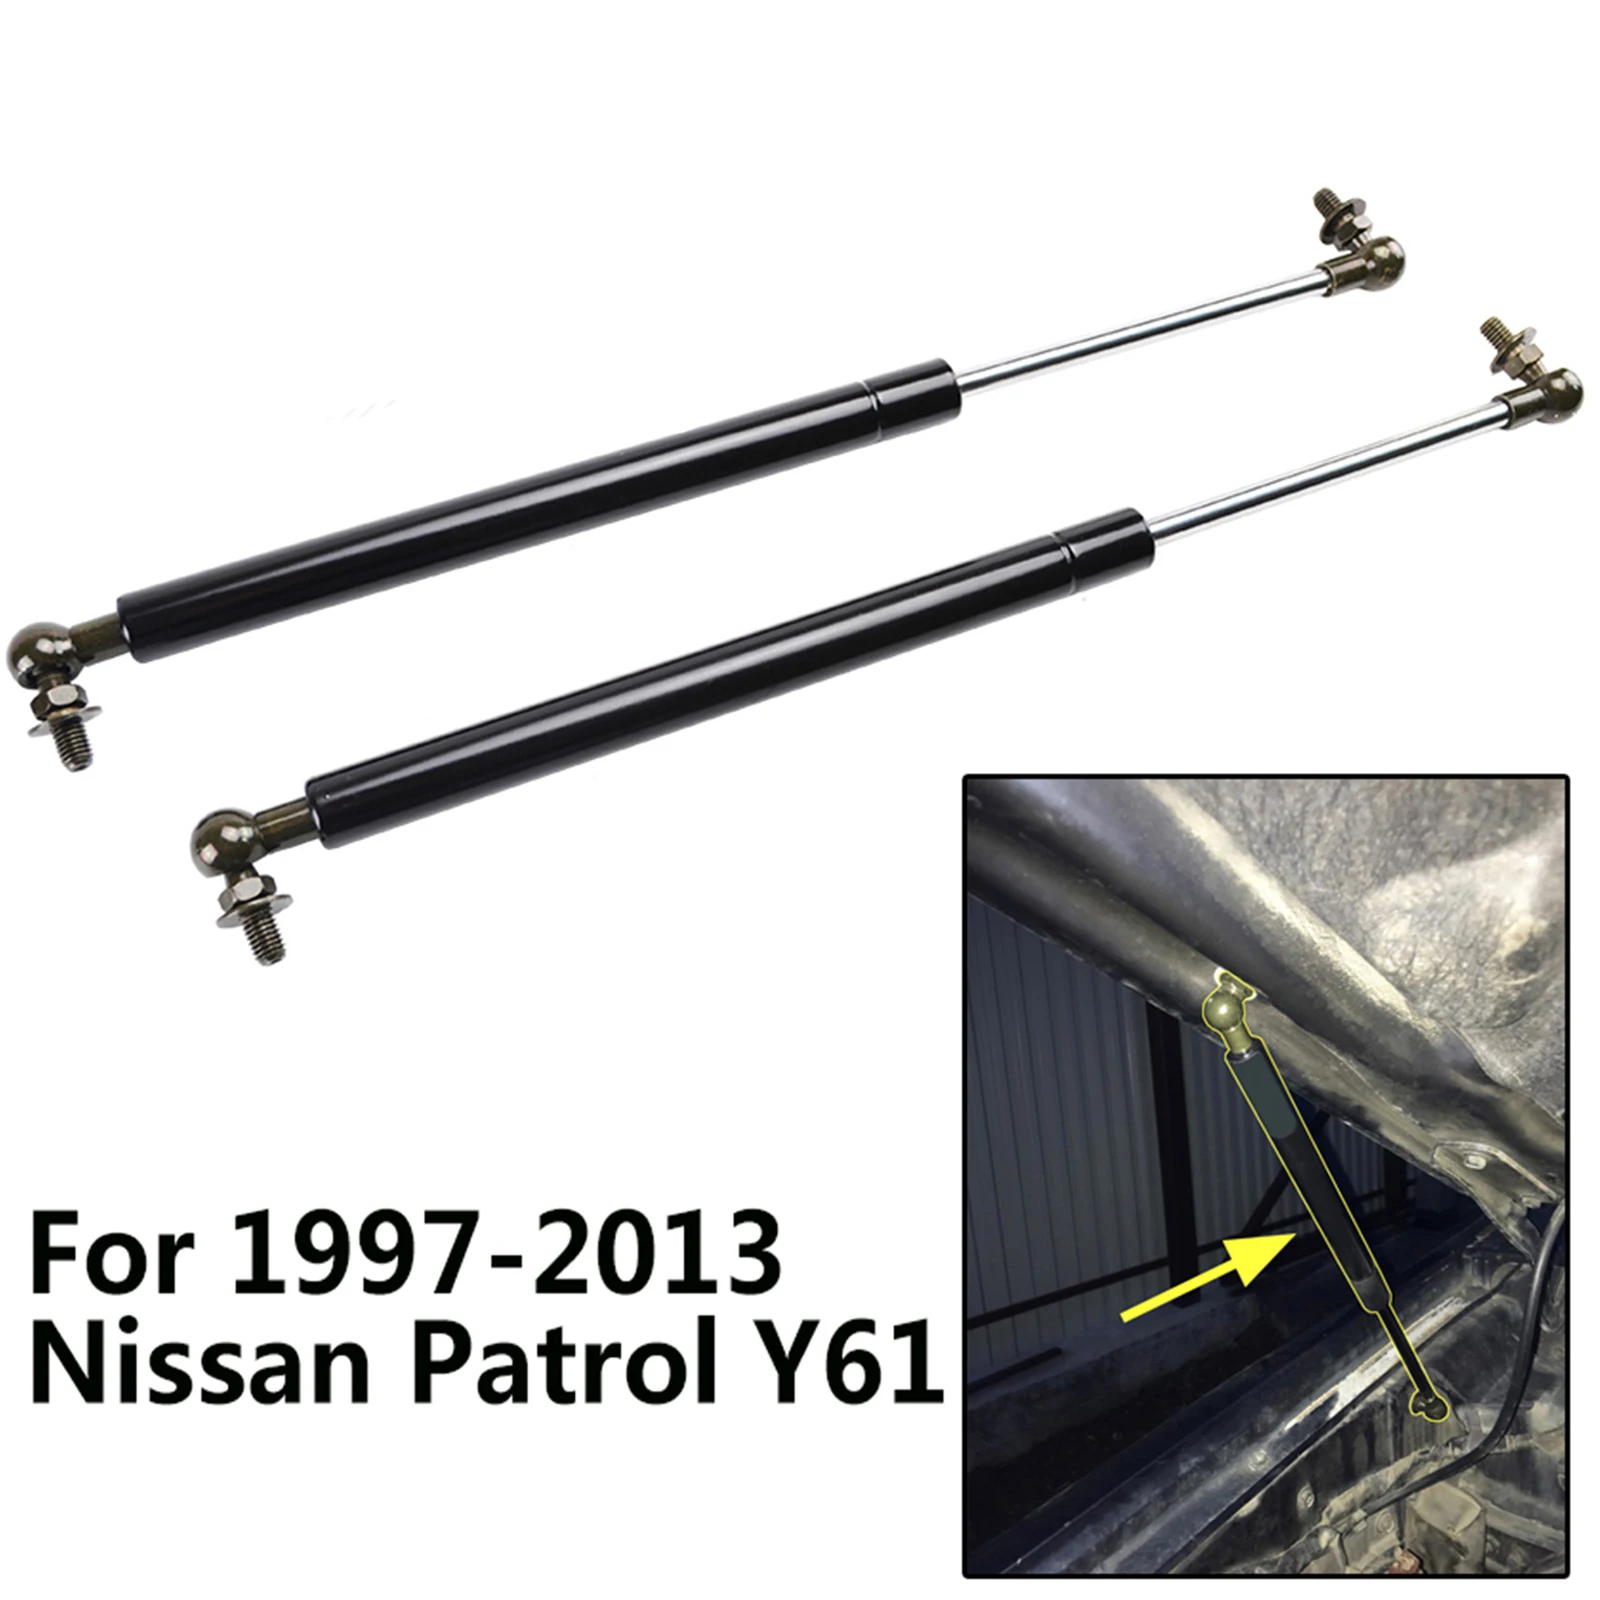 Resortes de Gas para capó delantero de Nissan Patrol Y61 1997-2018 Y62 2010-presente, soportes de elevación, varillas, juego de herramientas